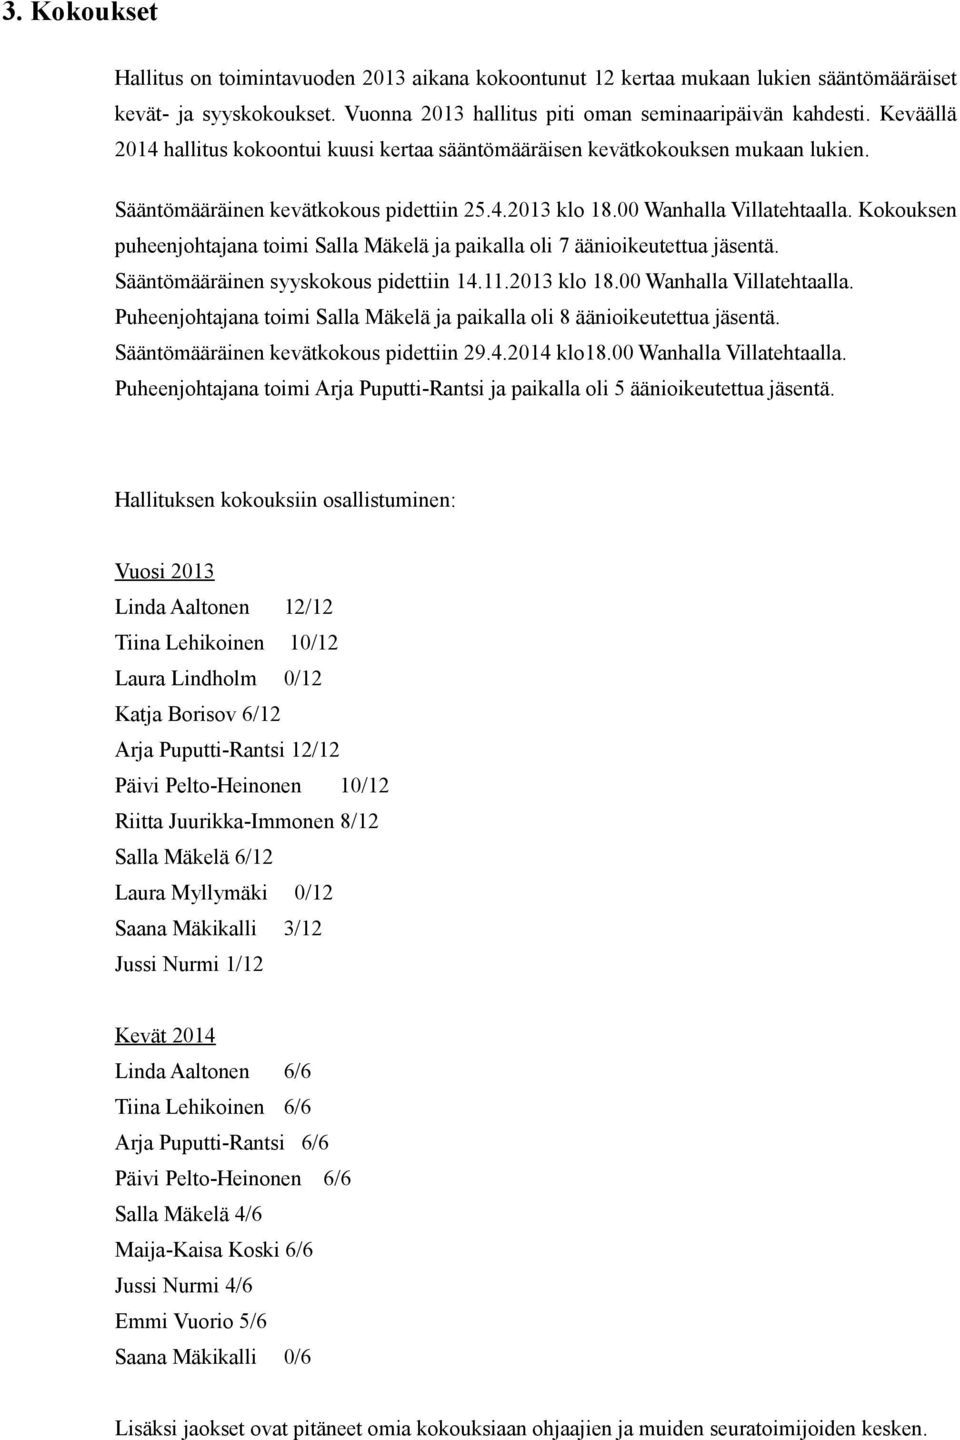 Kokouksen puheenjohtajana toimi Salla Mäkelä ja paikalla oli 7 äänioikeutettua jäsentä. Sääntömääräinen syyskokous pidettiin 14.11.2013 klo 18.00 Wanhalla Villatehtaalla.